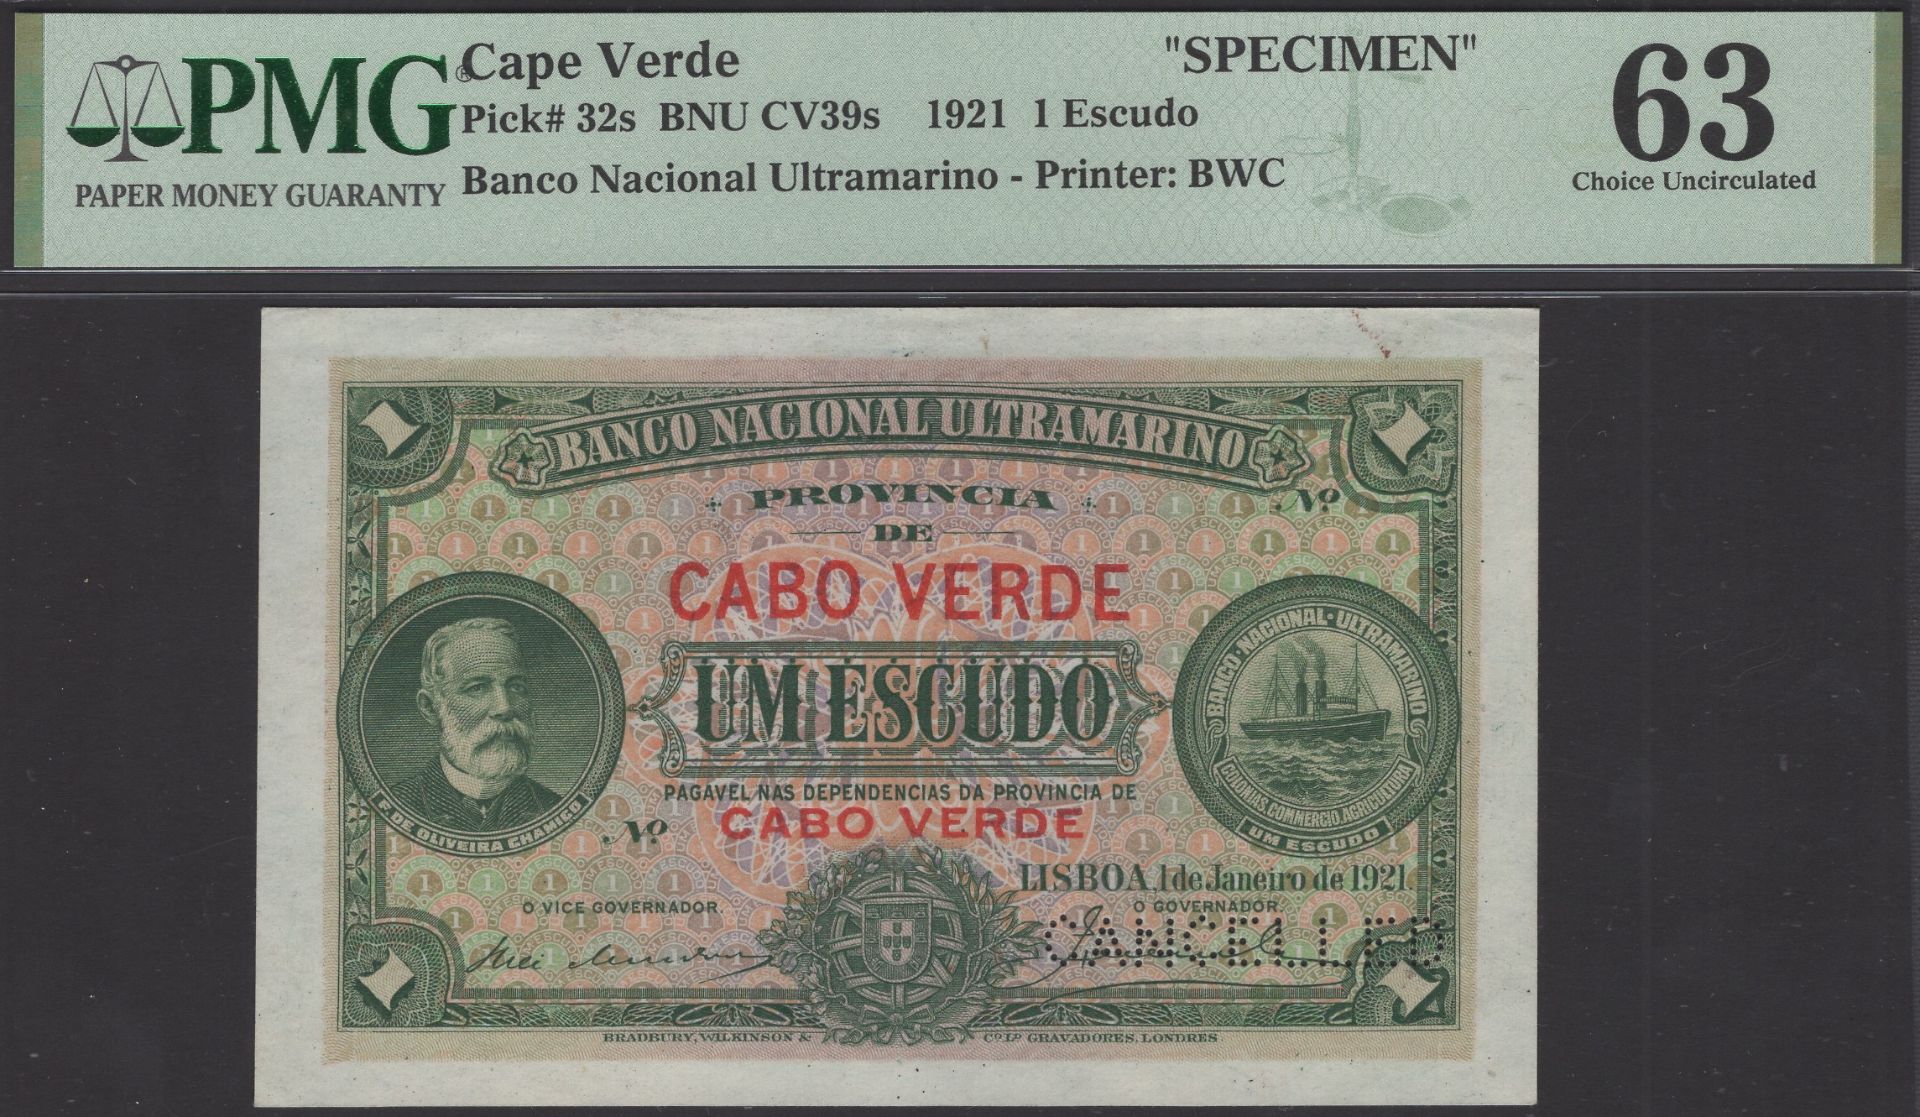 Banco Nacional Ultramarino, Cape Verde, proof 1 Escudo, 1 January 1921, no serial number, pe...